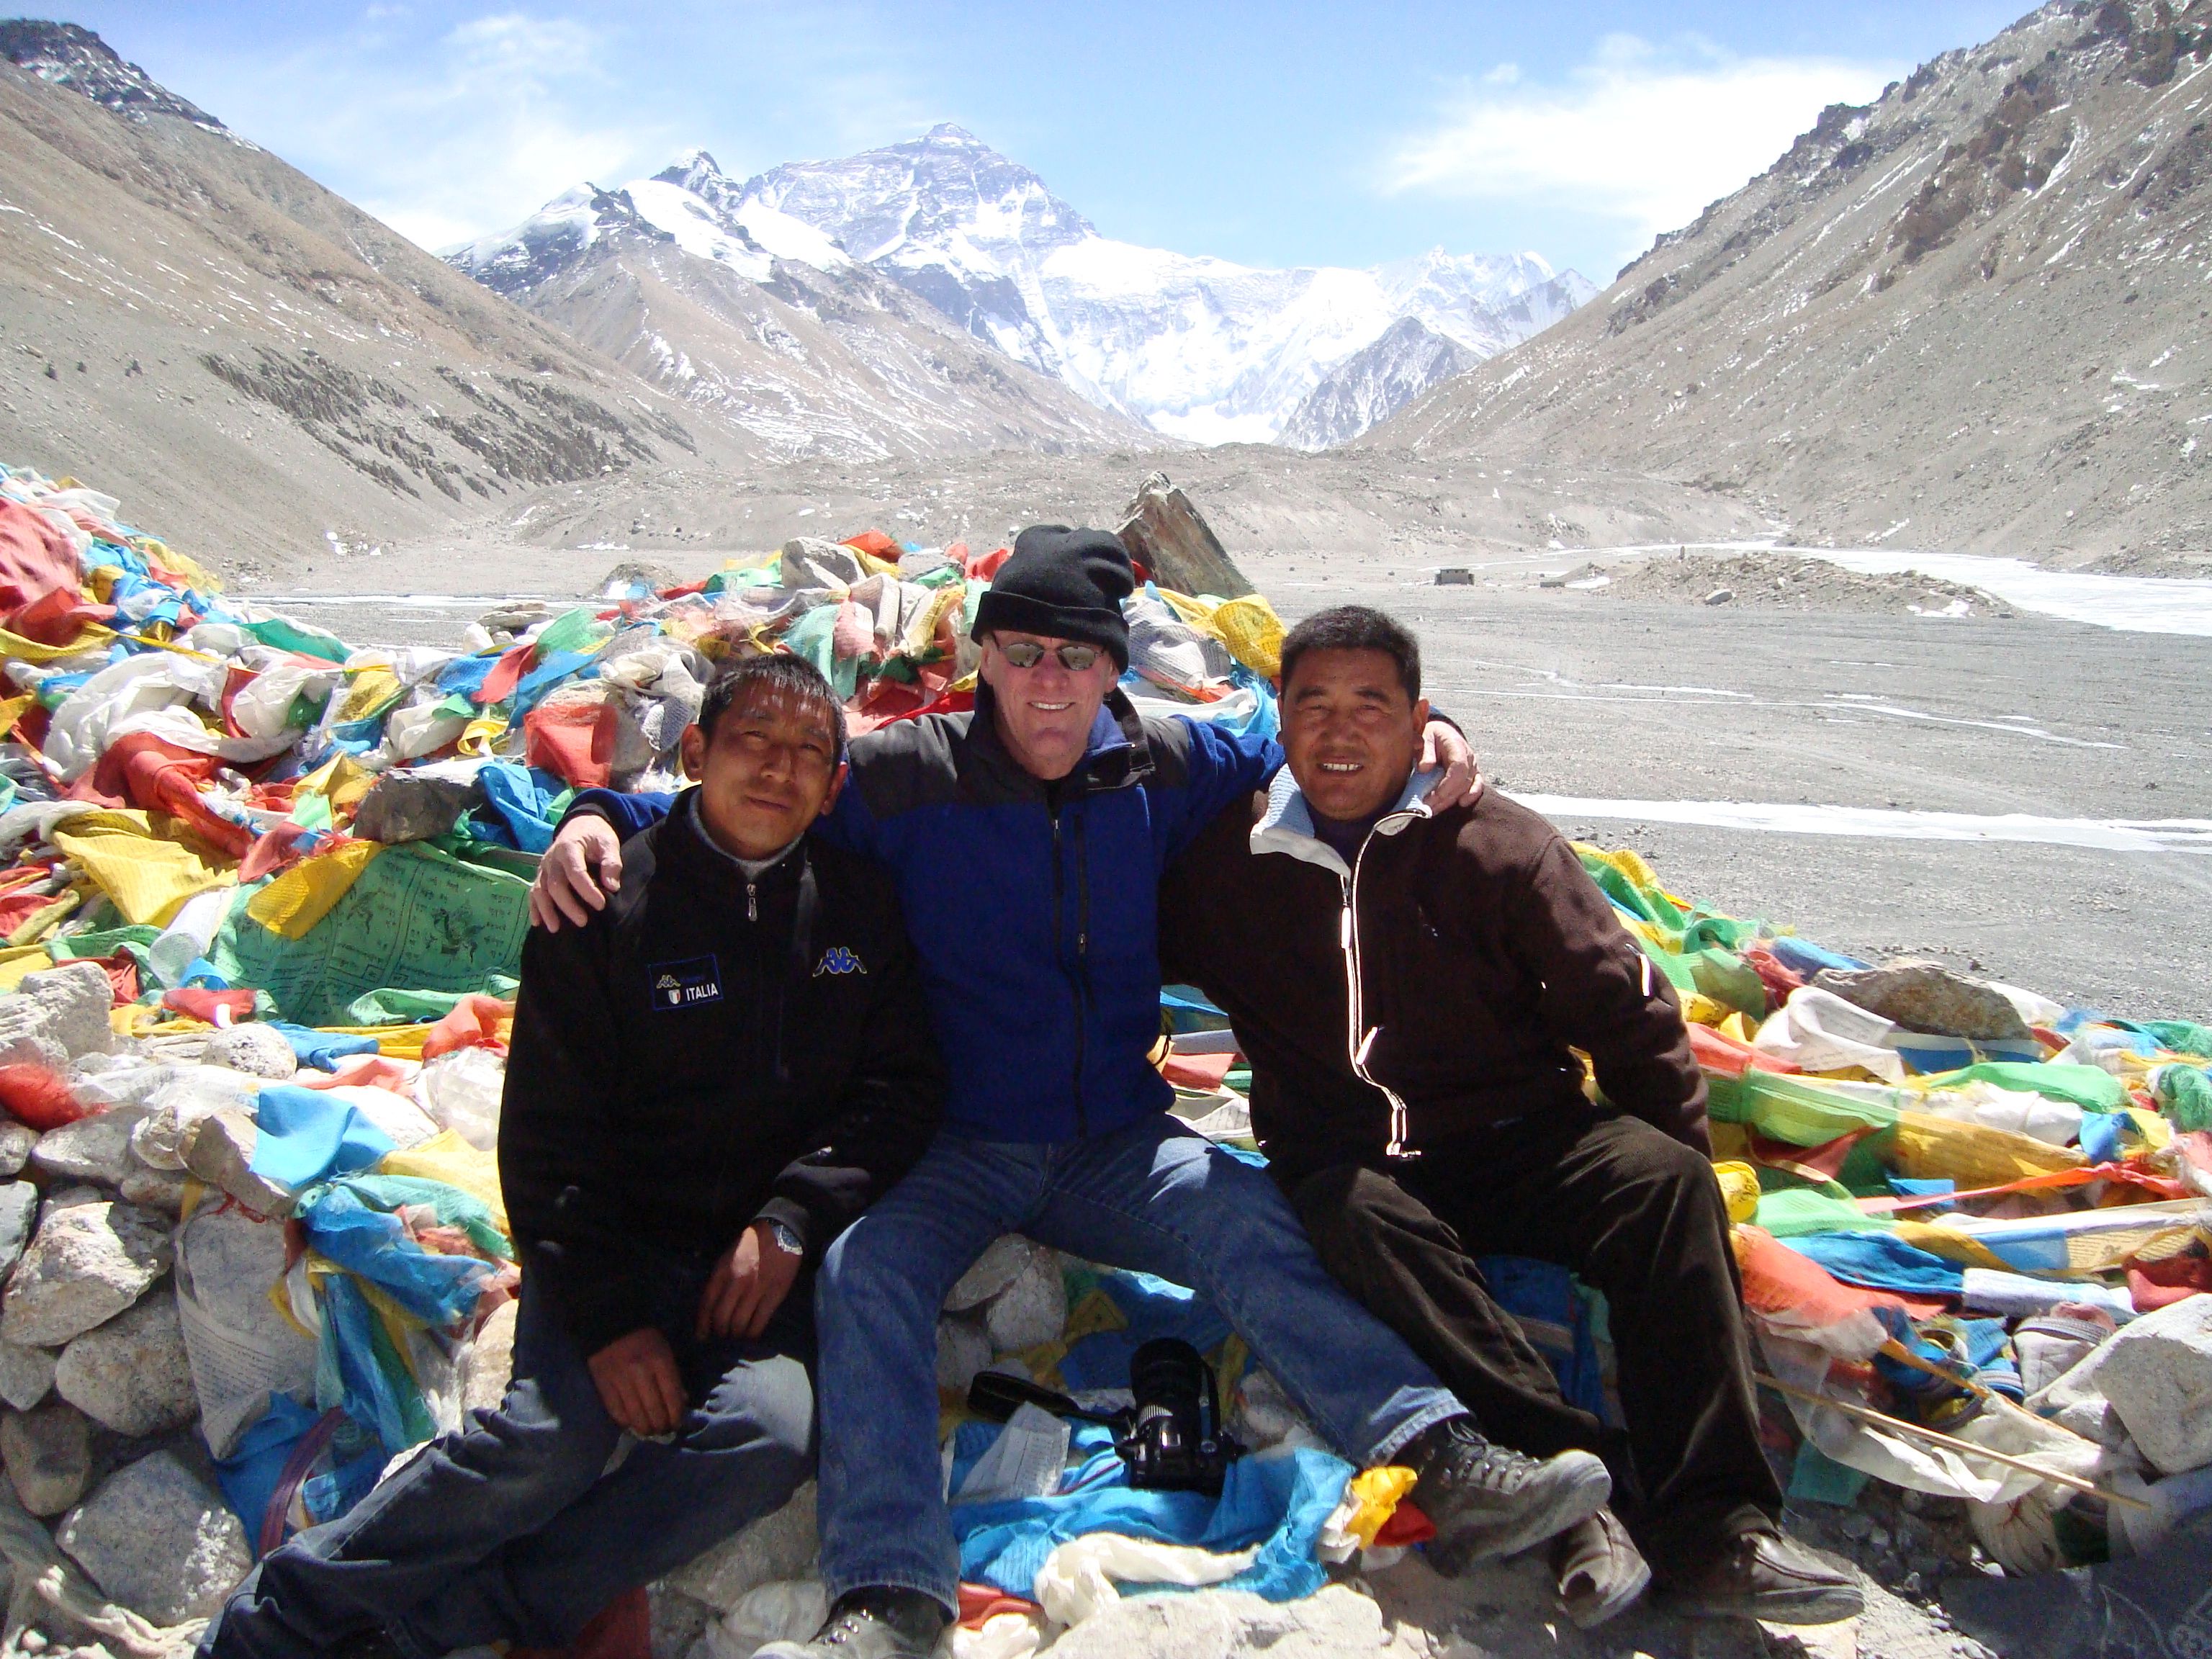 Mount Everest north base camp, Tibet.